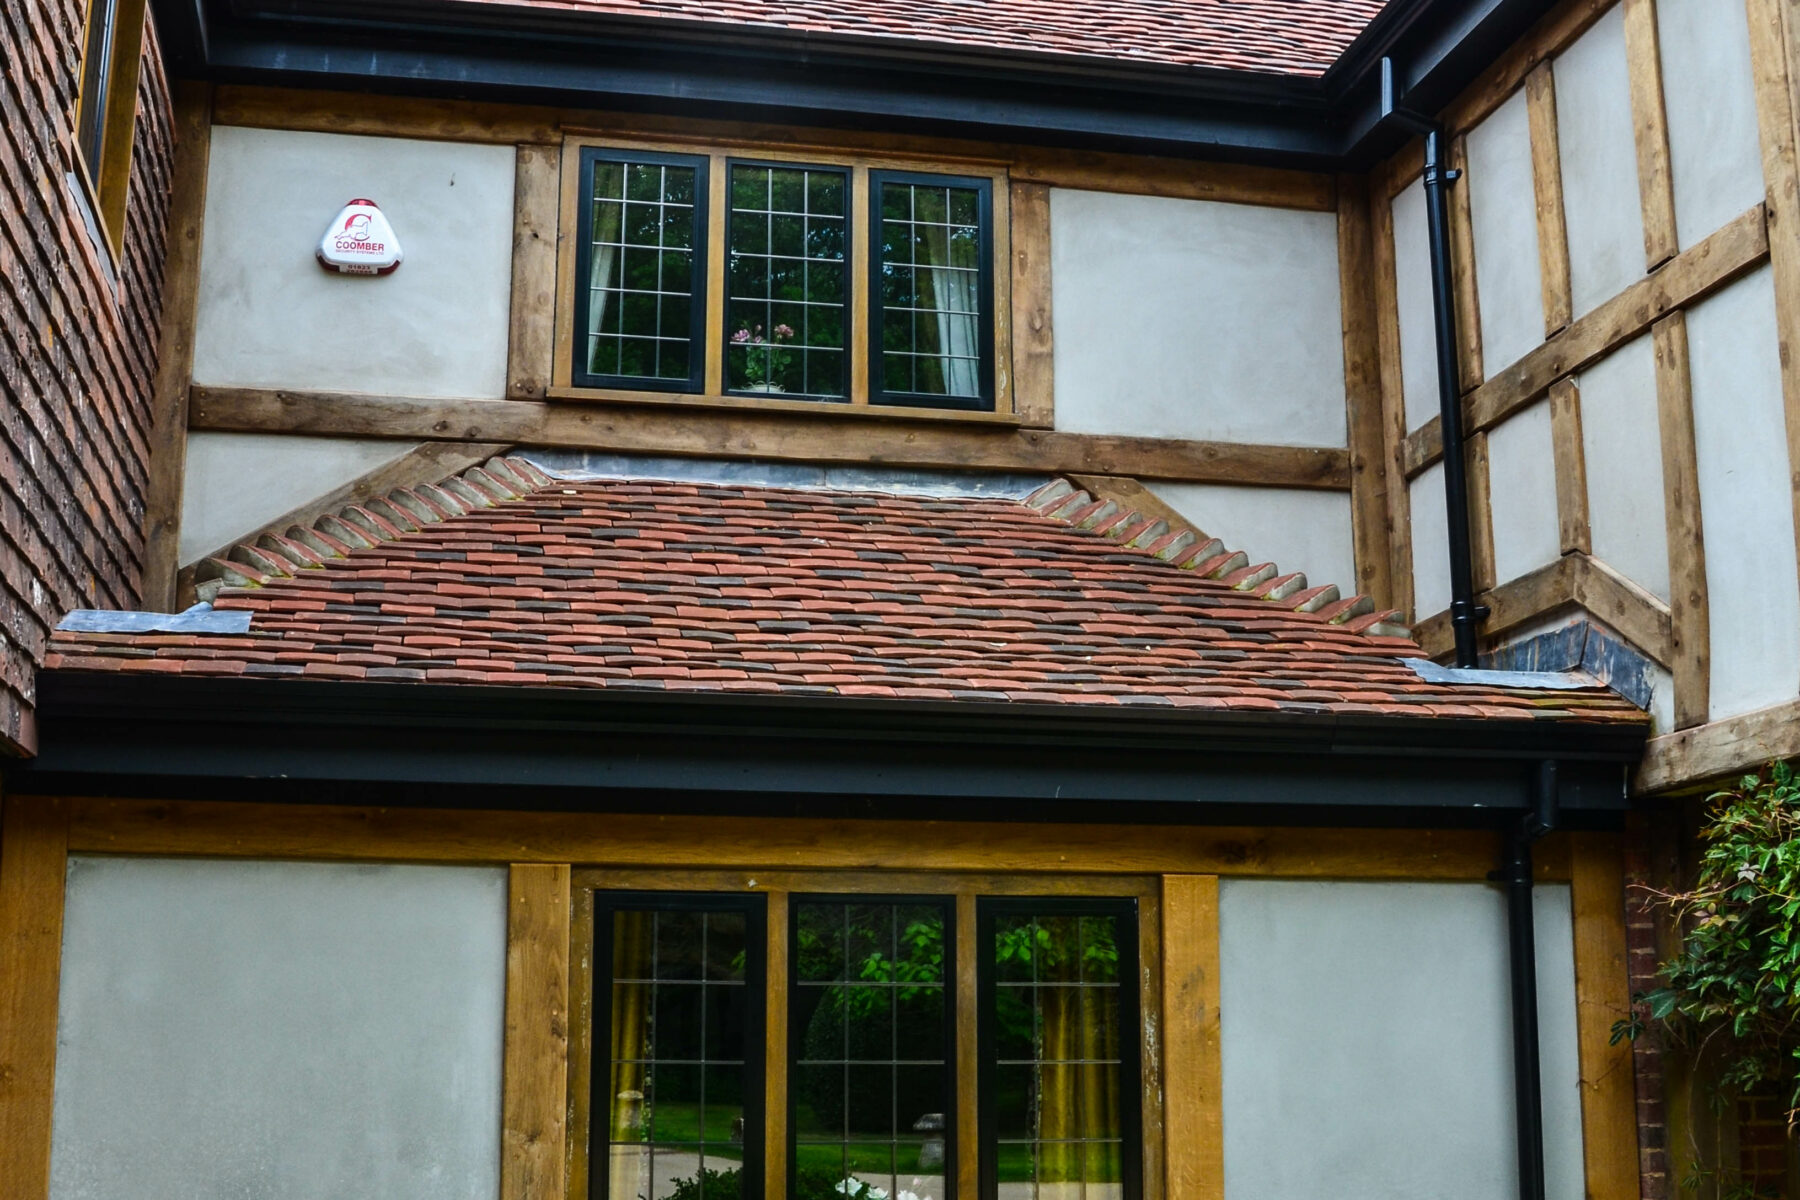 Casement windows in heritage home